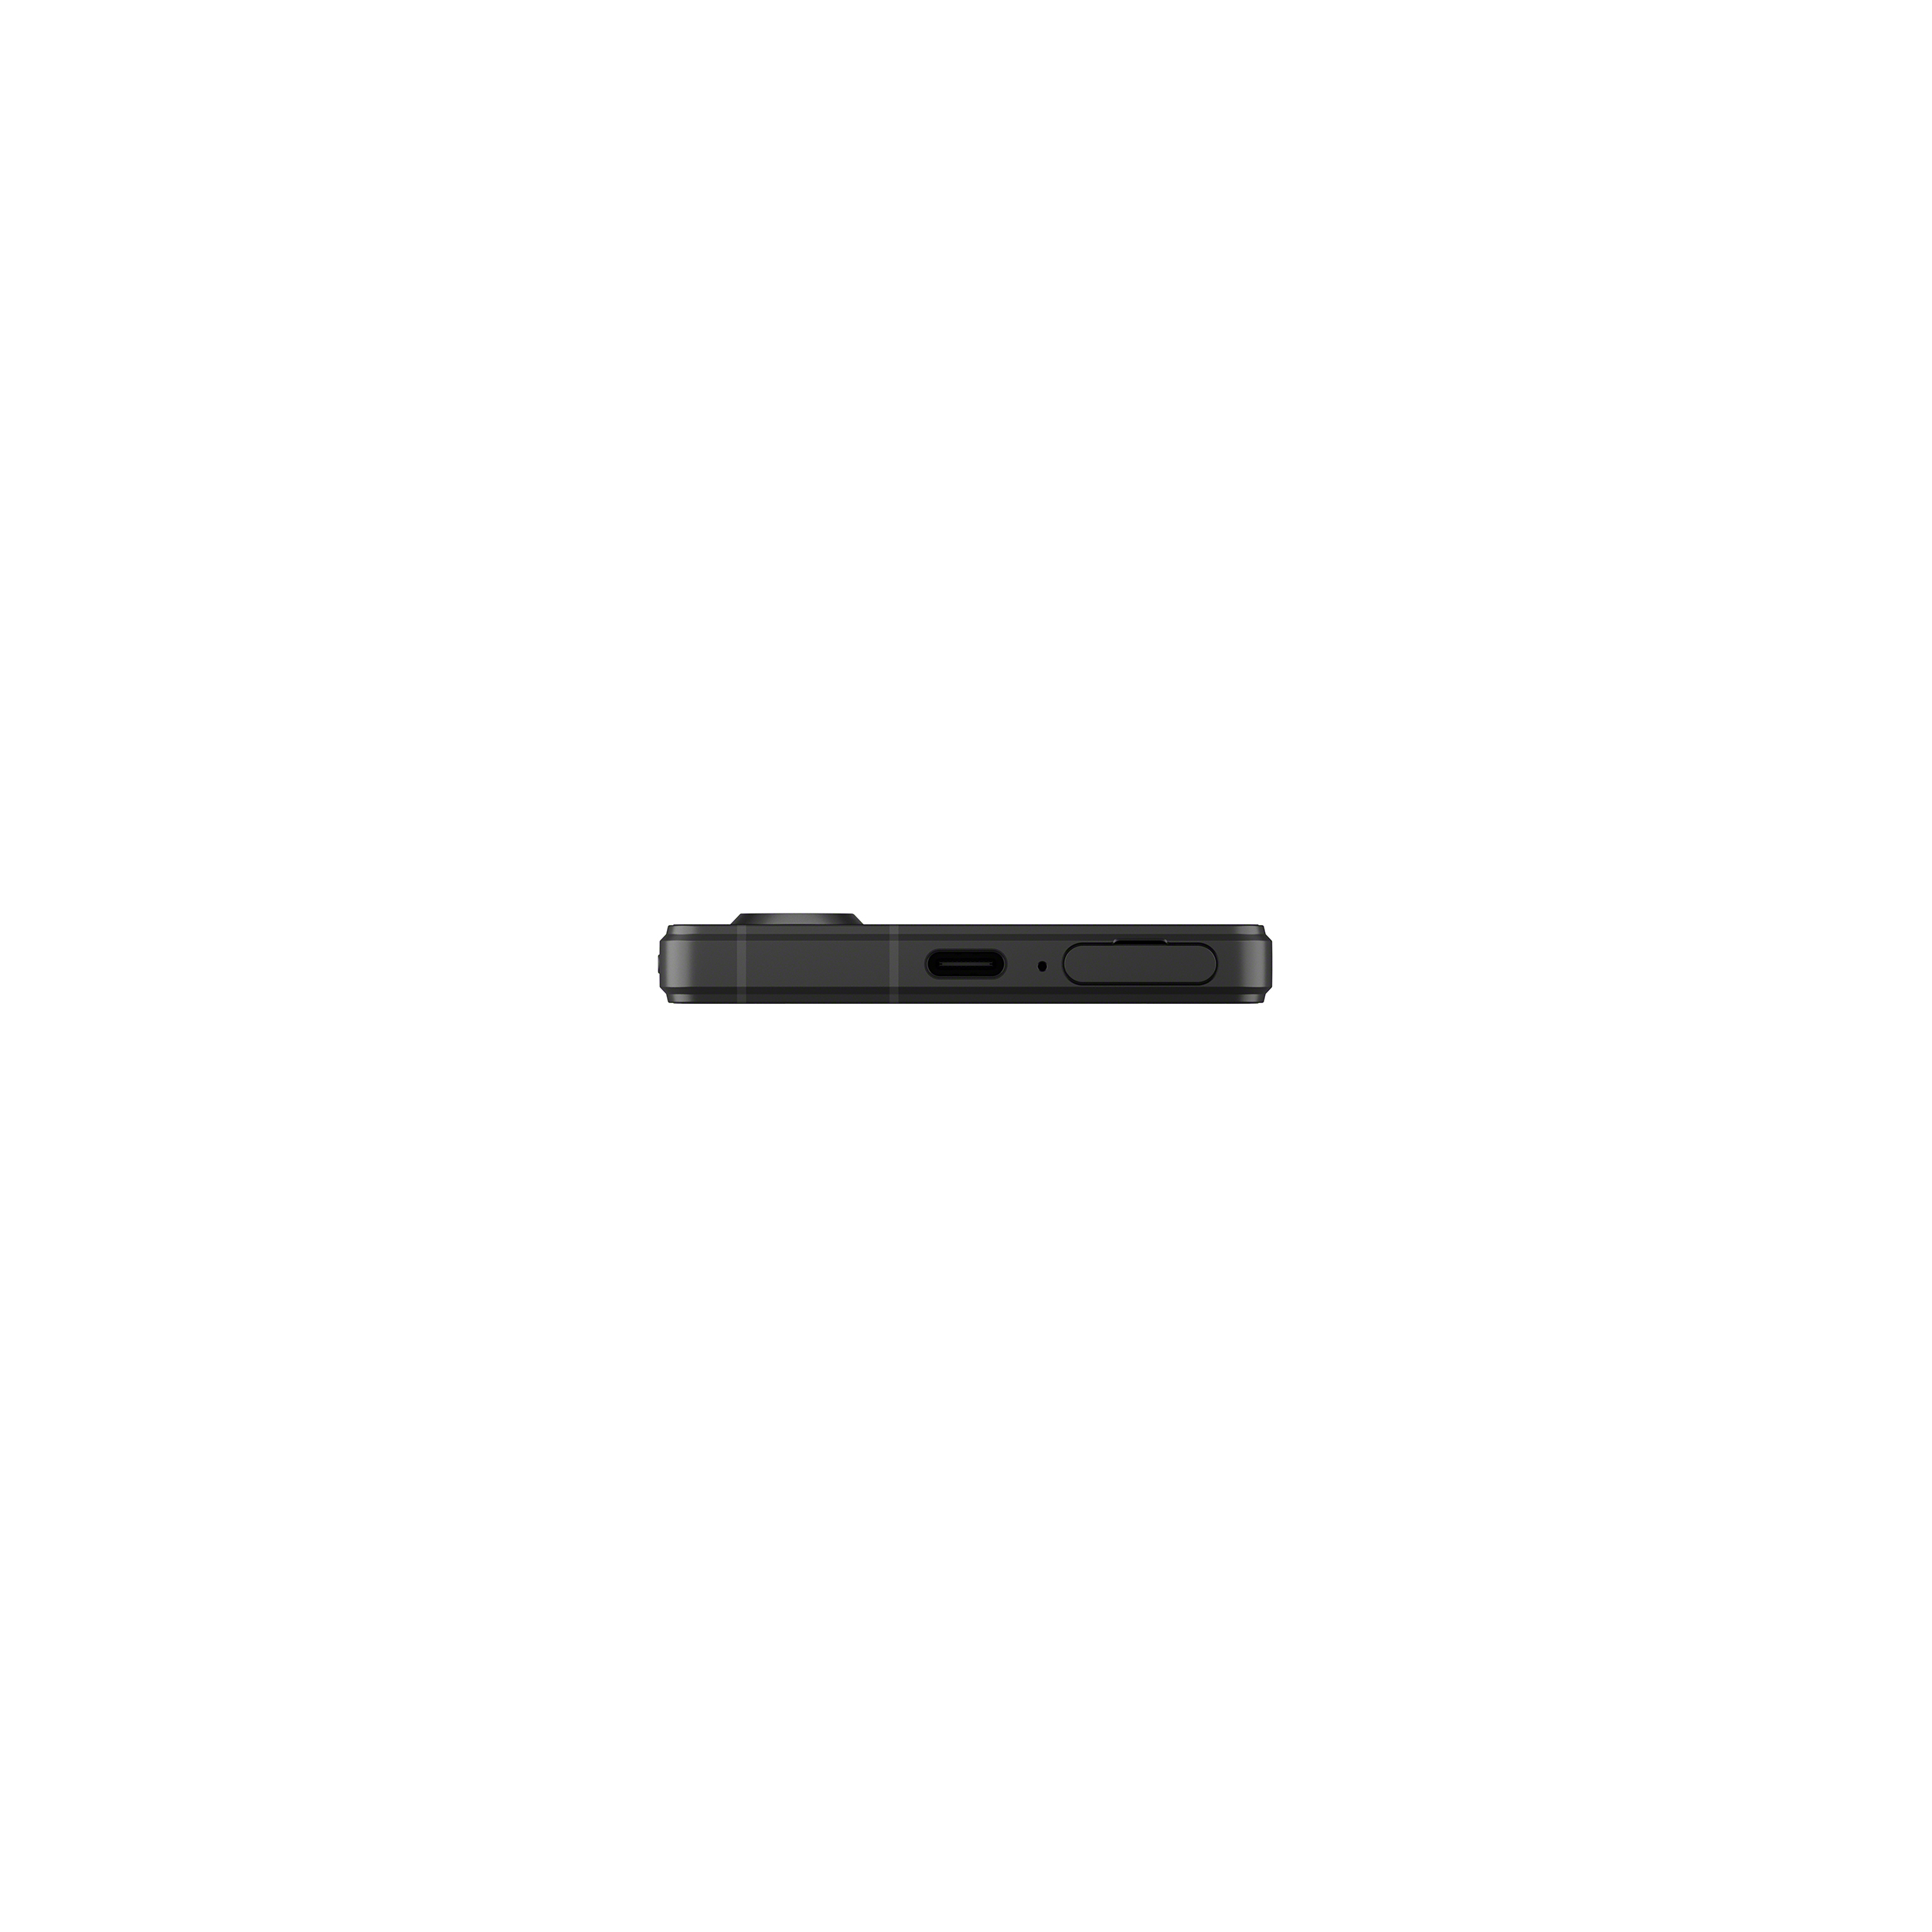 黑色 Xperia 5 V 手機底部圖